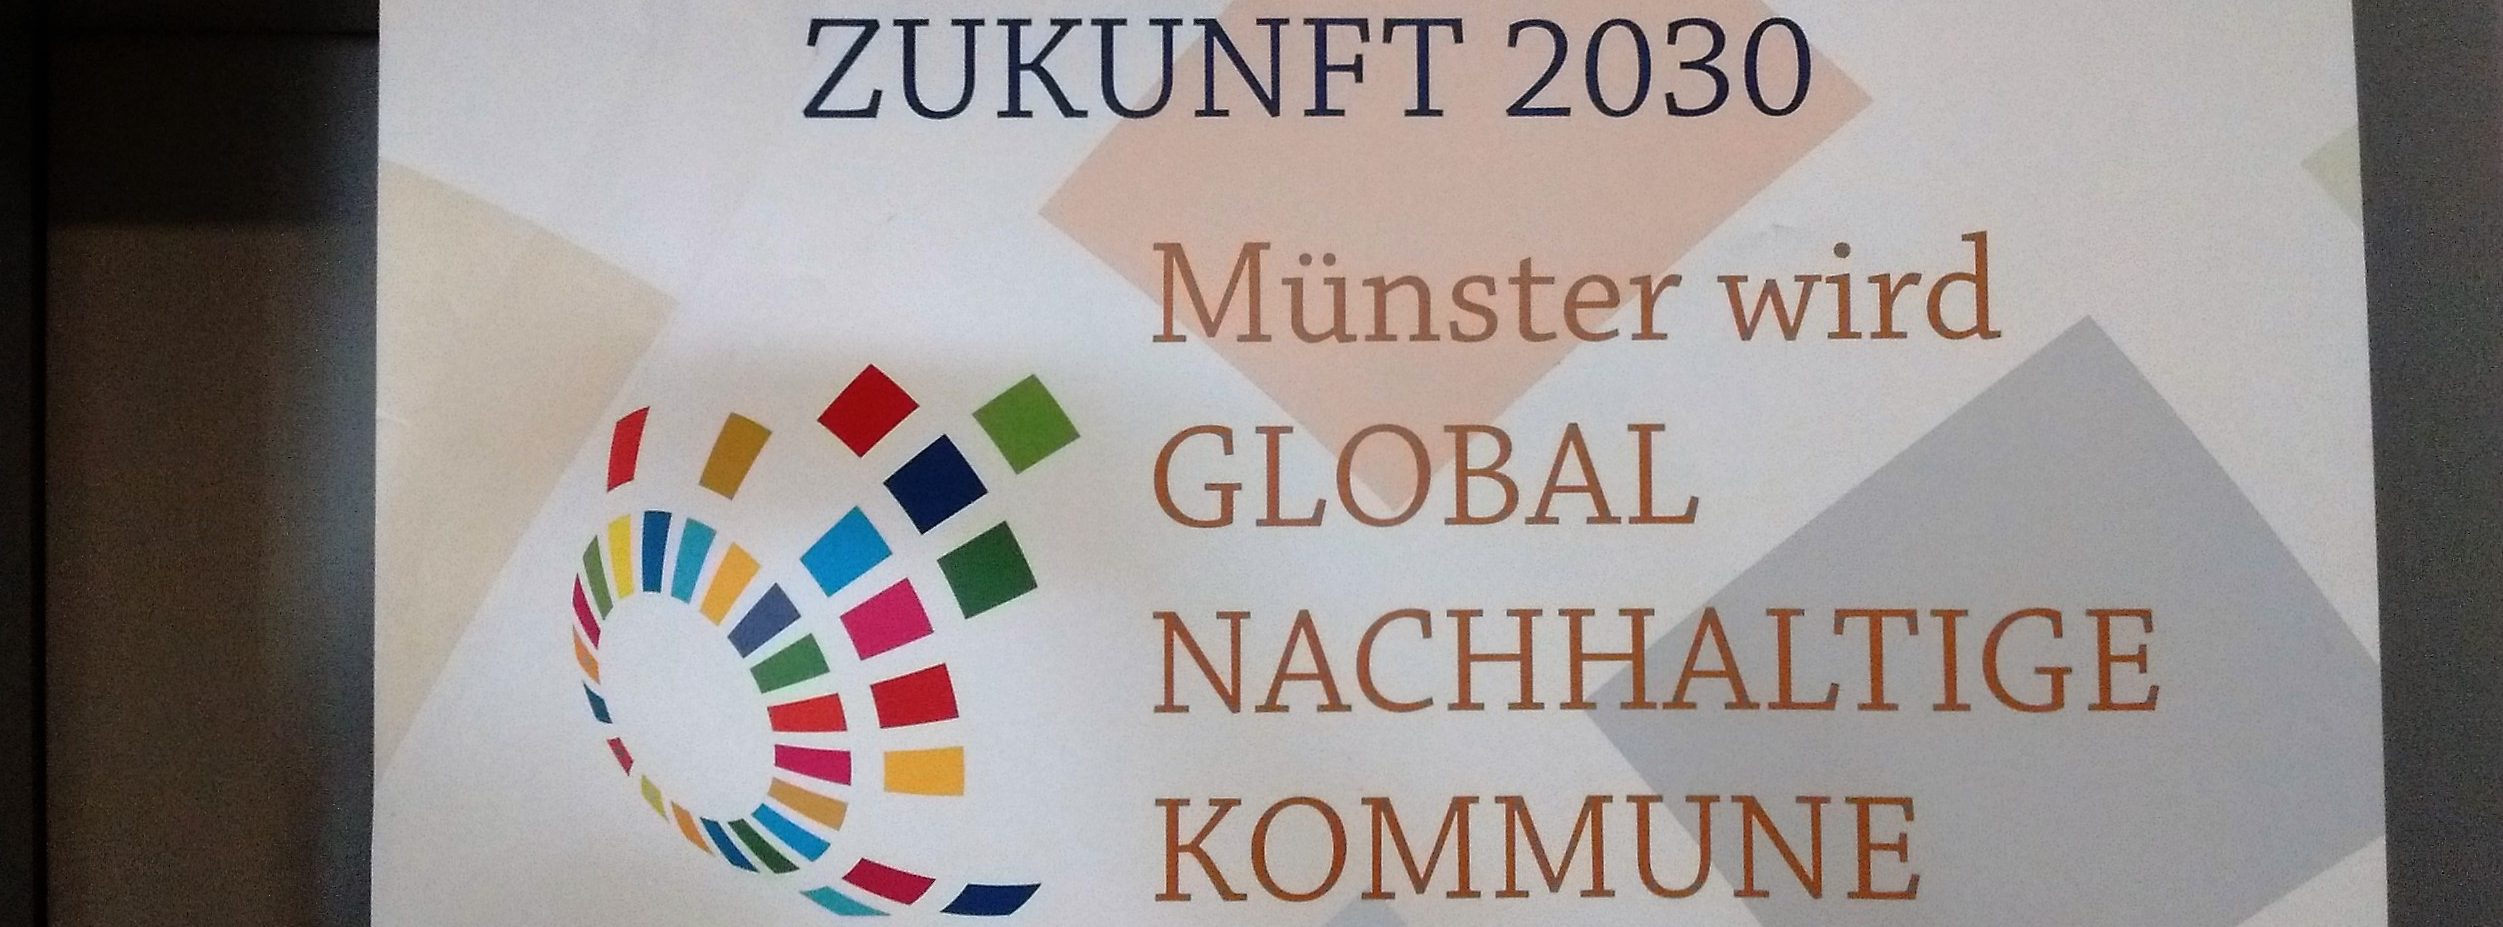 Global Nachhaltige Kommune - Stadt Münster